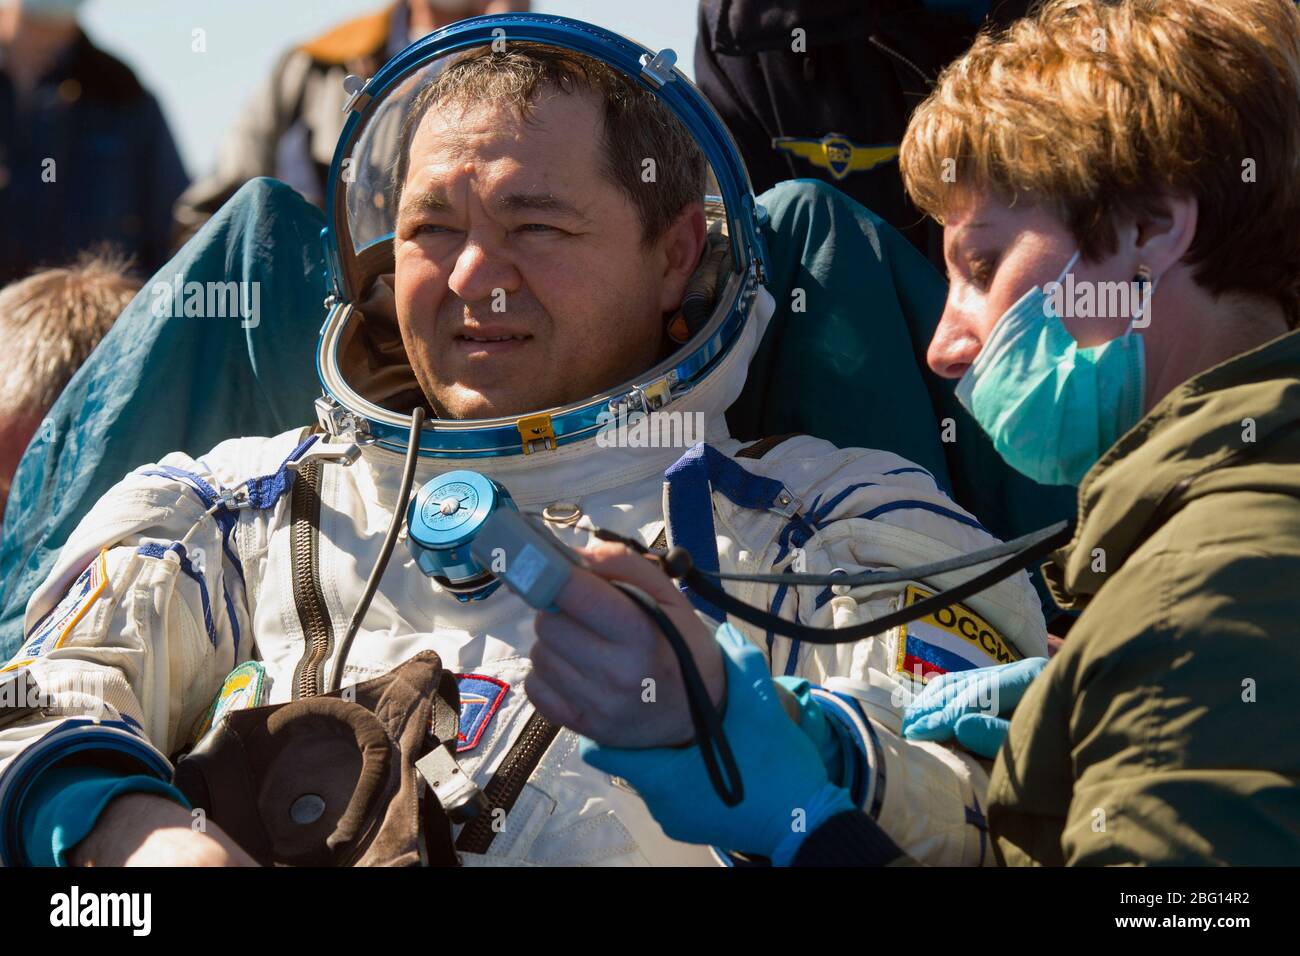 ZHEZKAZGAN, KASACHSTAN - 17. April 2020 - Expedition 62 Kosmonaut Oleg Skripochka wird vor dem Sojus MS-15 Raumschiff gesehen, nachdem er bei der NASA gelandet war Stockfoto